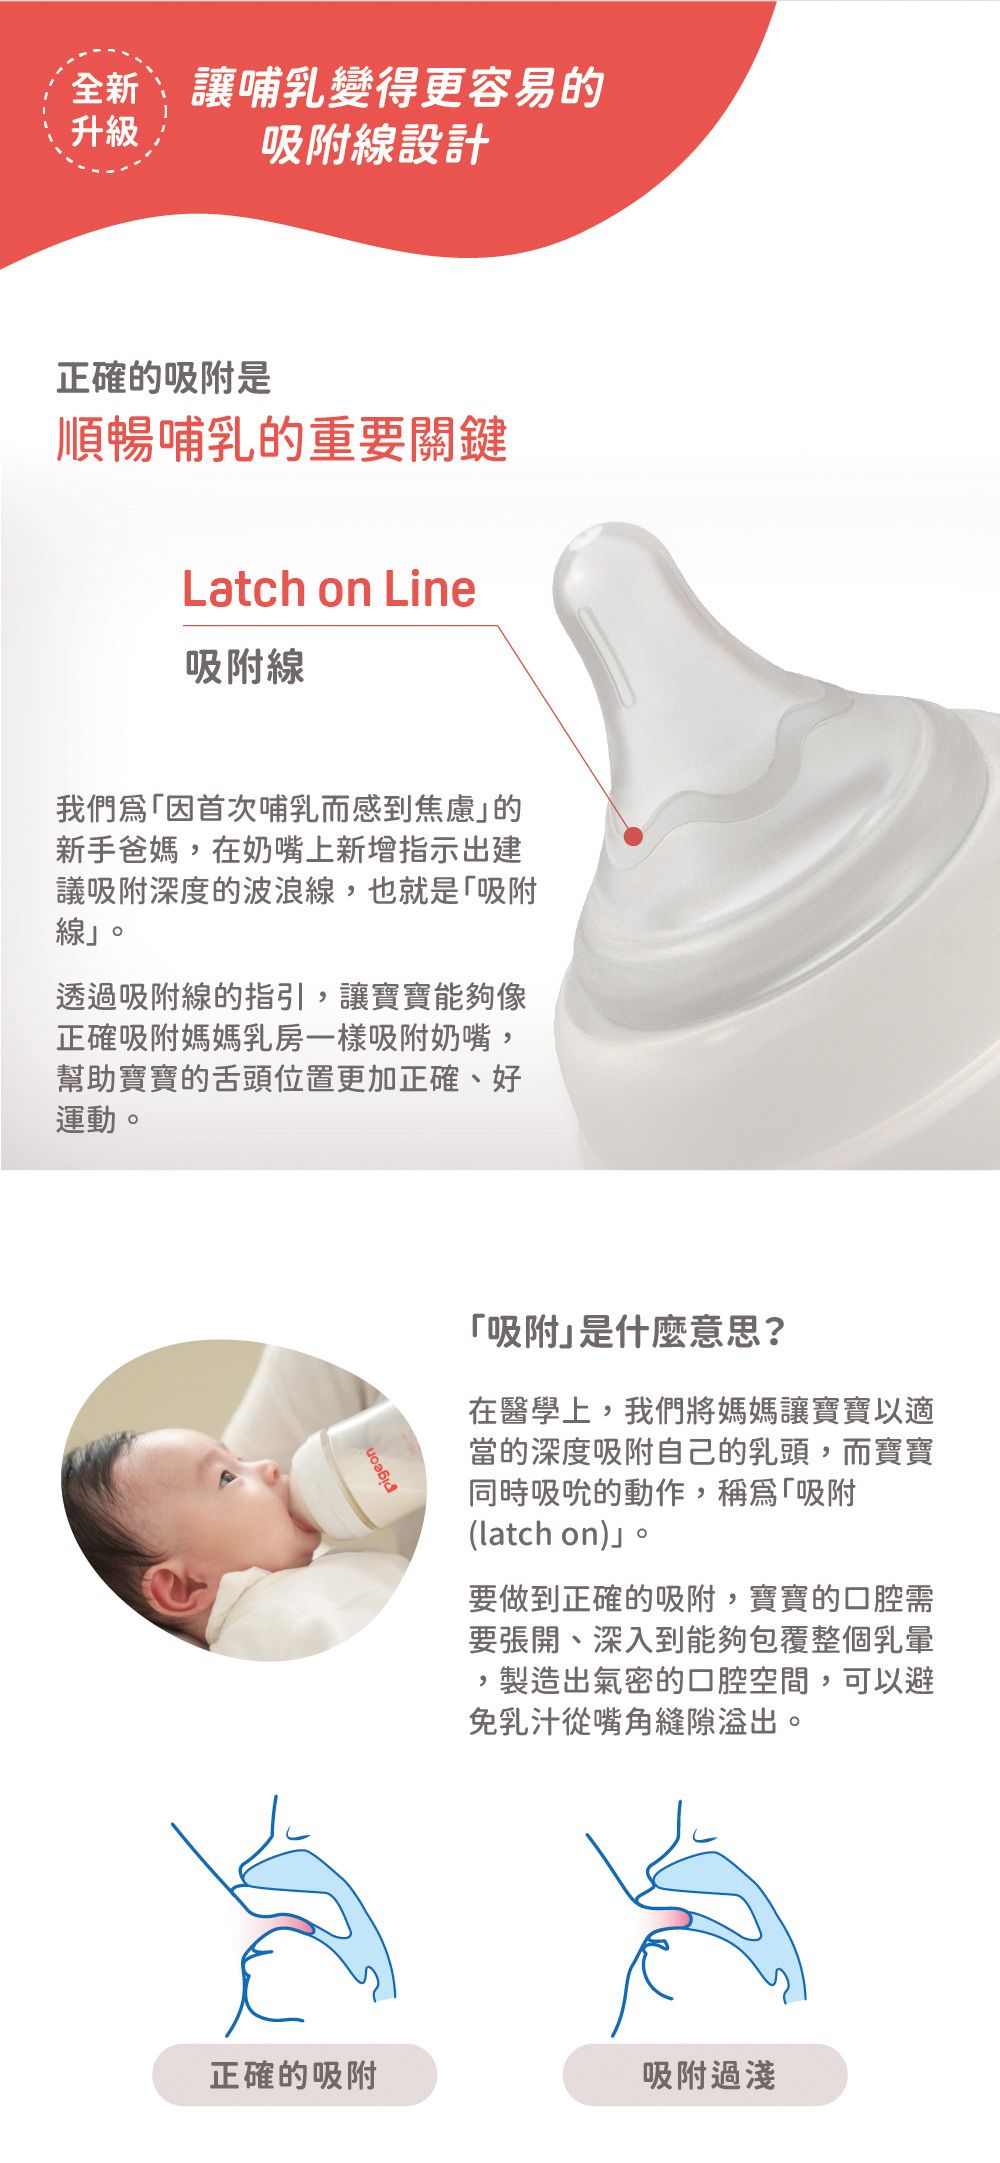 全新讓哺乳變得更容易的升級吸附線設計正確的吸附是順暢哺乳的重要關鍵Latch on Line吸附線我們因首次哺乳而感到焦慮的新手爸媽,在奶嘴上新增指示出建議吸附深度的波浪線,也就是「吸附線。透過吸附線的指引,讓寶寶能夠像正確吸附媽媽乳房一樣吸附奶嘴,幫助寶寶的舌頭位置更加正確、好運動。「吸附」是什麼意思?在醫學上,我們將媽媽讓寶寶以適當的深度吸附自己的乳頭,而寶寶同時吸吮的動作,稱為「吸附(latch on)」。要做到正確的吸附,寶寶的口腔需要張開、深入到能夠包覆整個乳暈,製造出氣密的口腔空間,可以避免乳汁從嘴角縫隙。正確的吸附吸附過淺